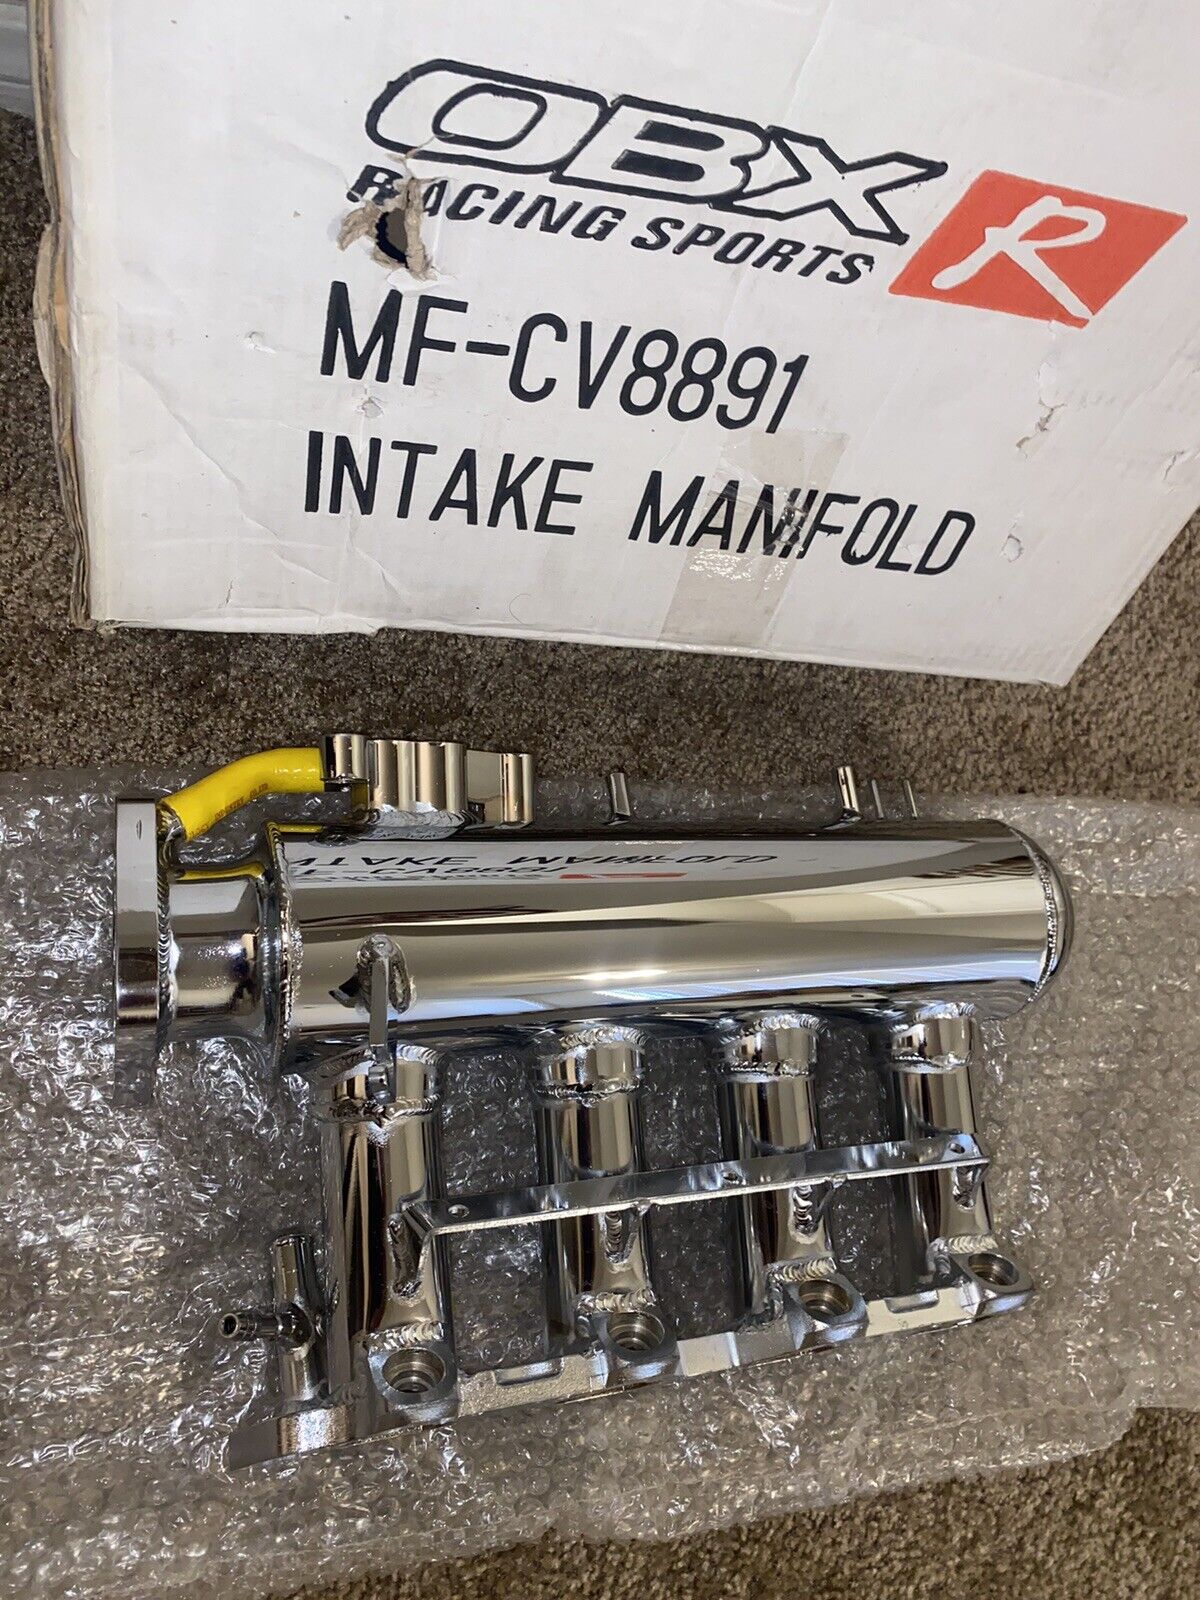 Civic/CRX (88-91’ D15) Air Intake Manifold, Civic Parts, CRX Parts, Honda Parts